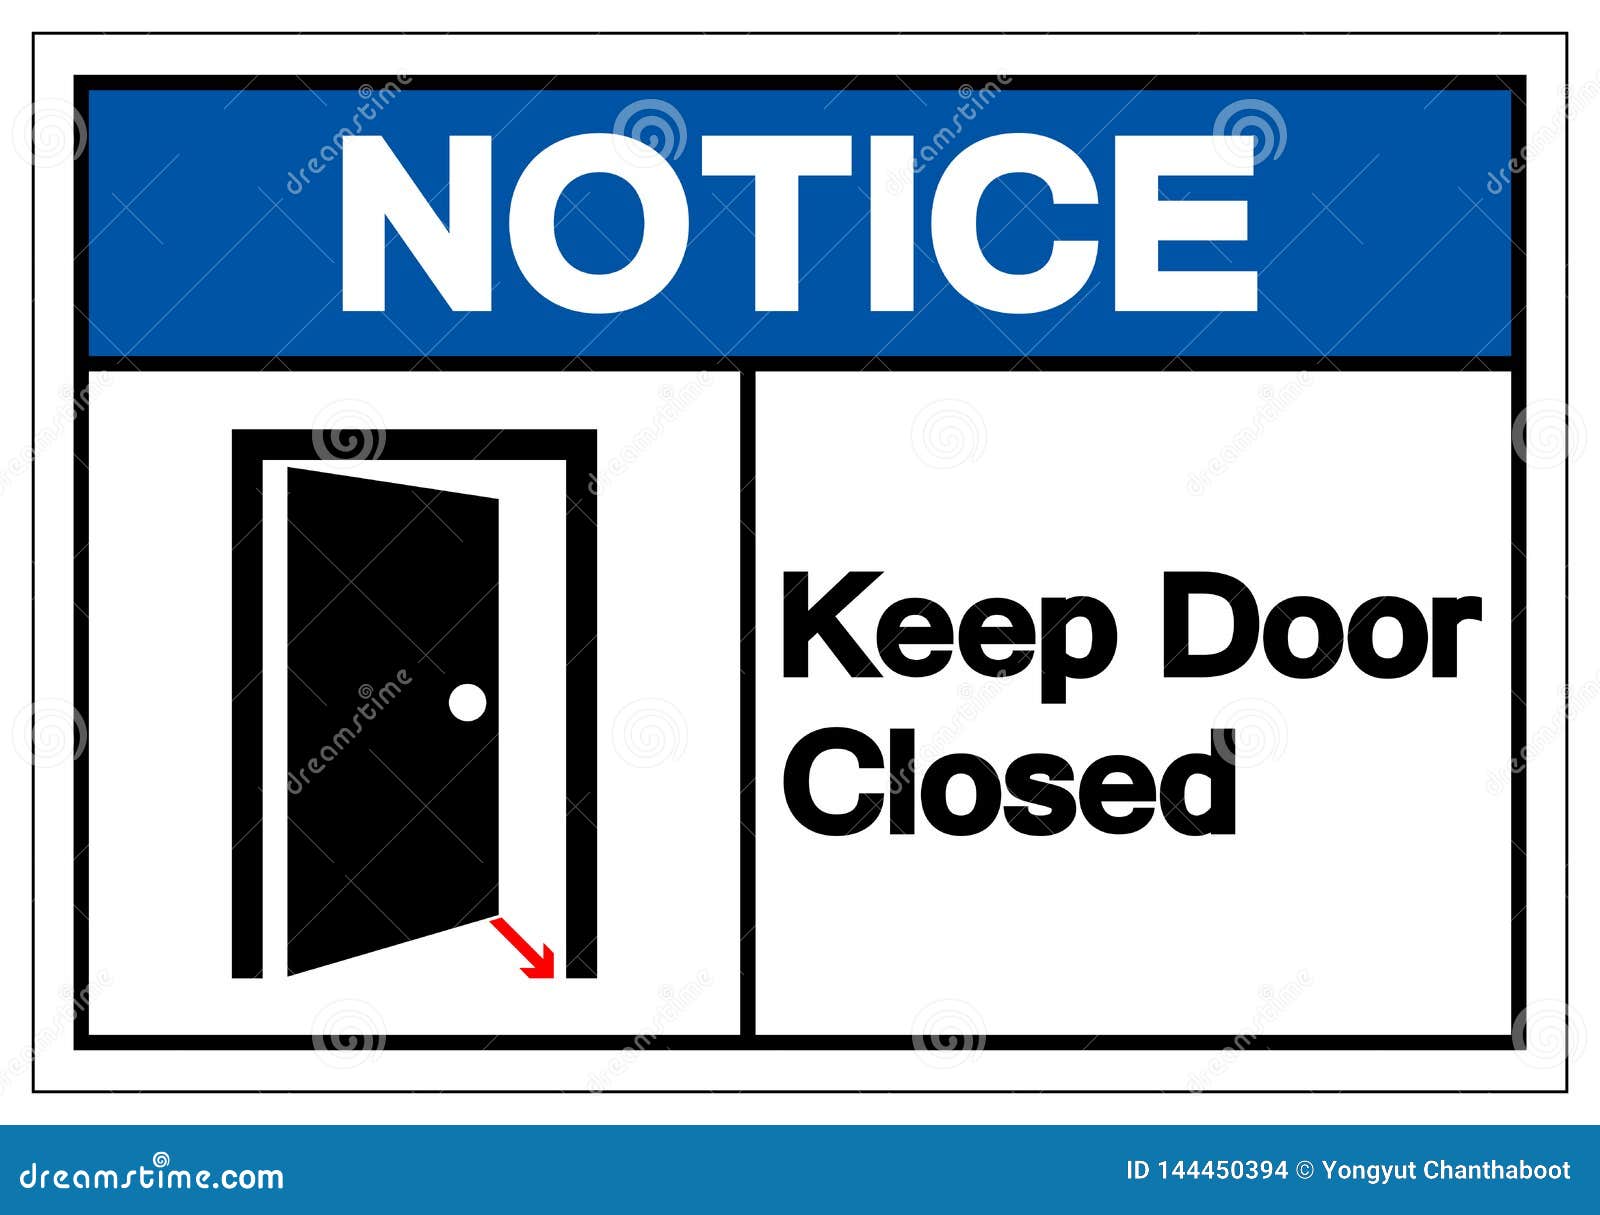 Знаки на дверь. Notice keep Doors closed. Знак закрытой двери. Знак дверь закрыта.